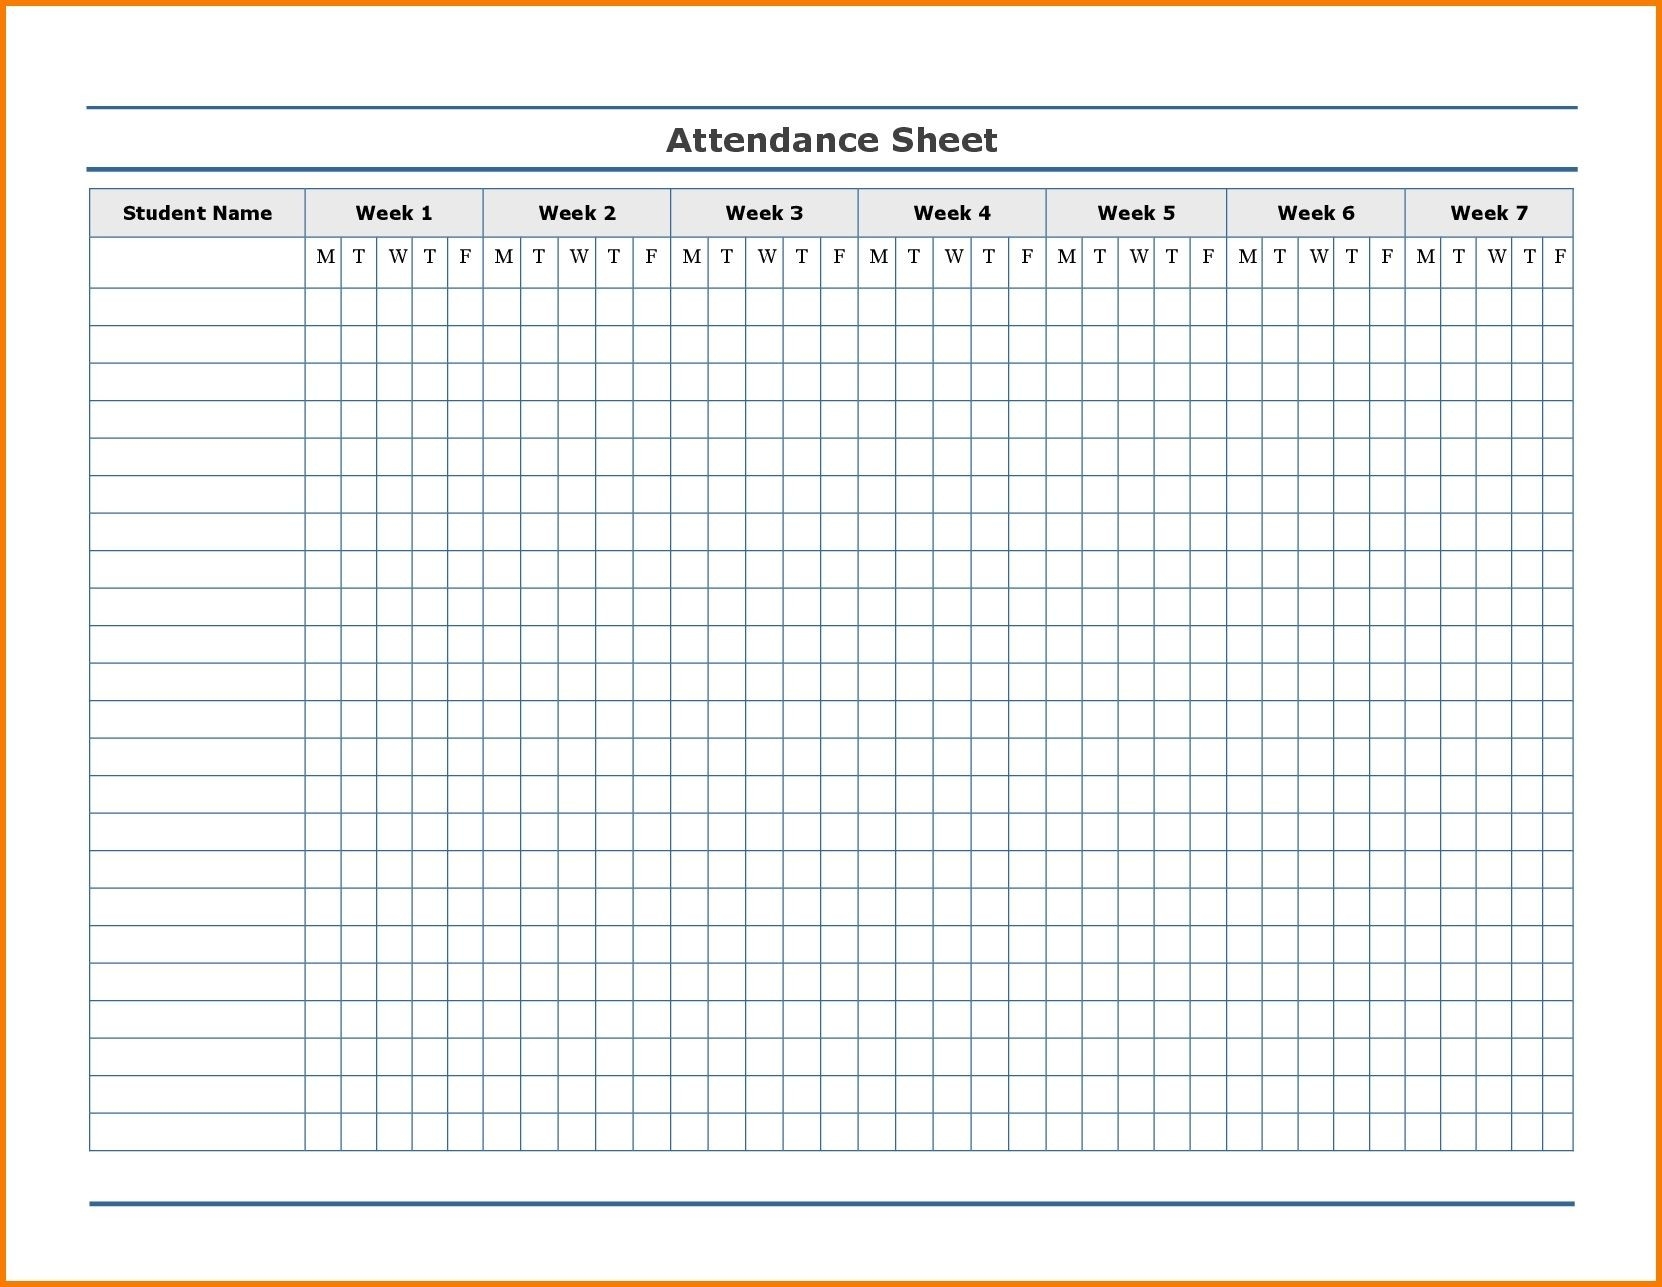 Free Employee Attendance Calendar | Employee Tracker-Attendance Calendar Template Free